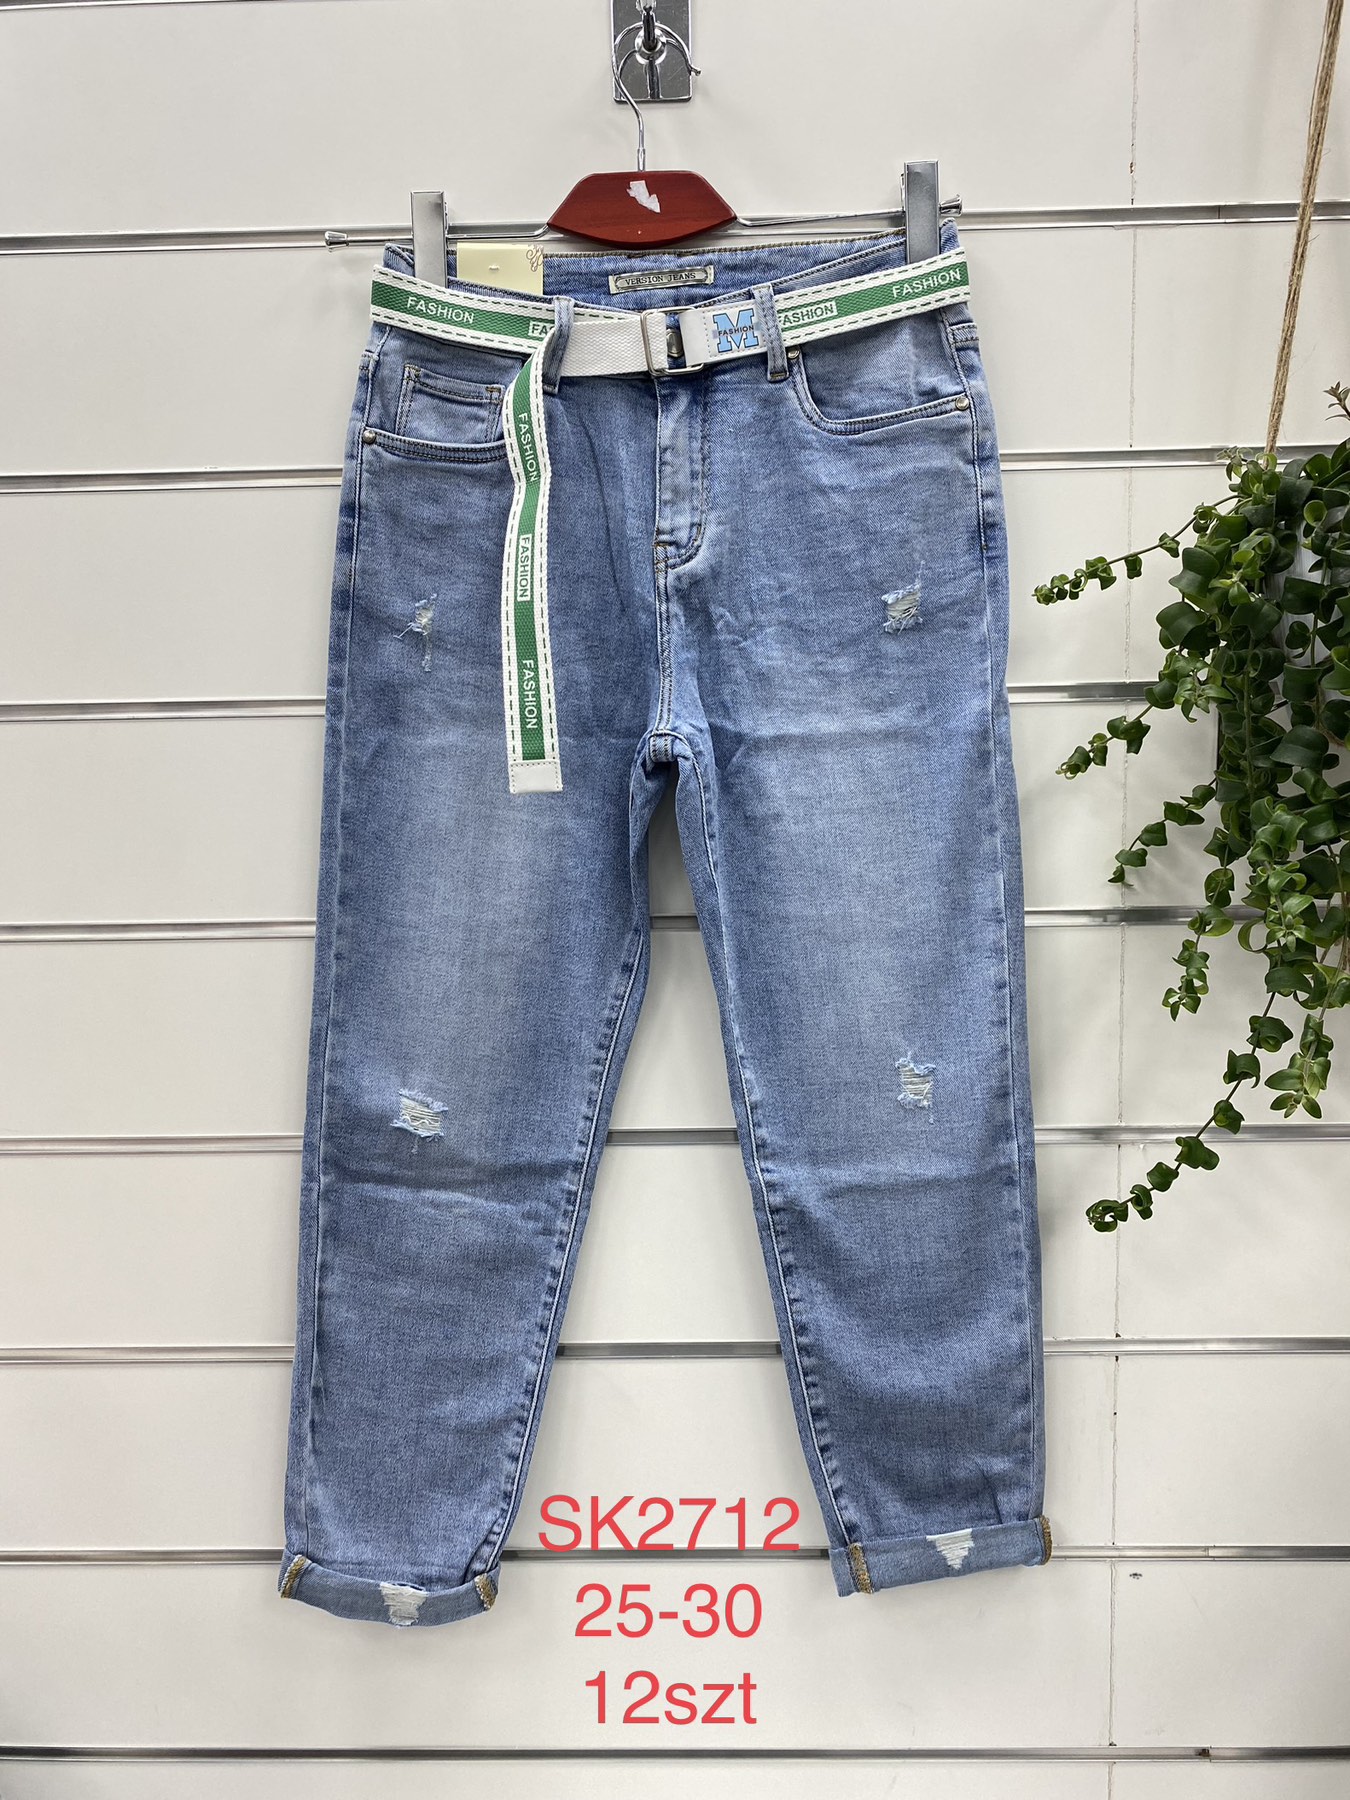 Spodnie damskie jeans Roz  25-30.  1 kolor . Paczka 12szt